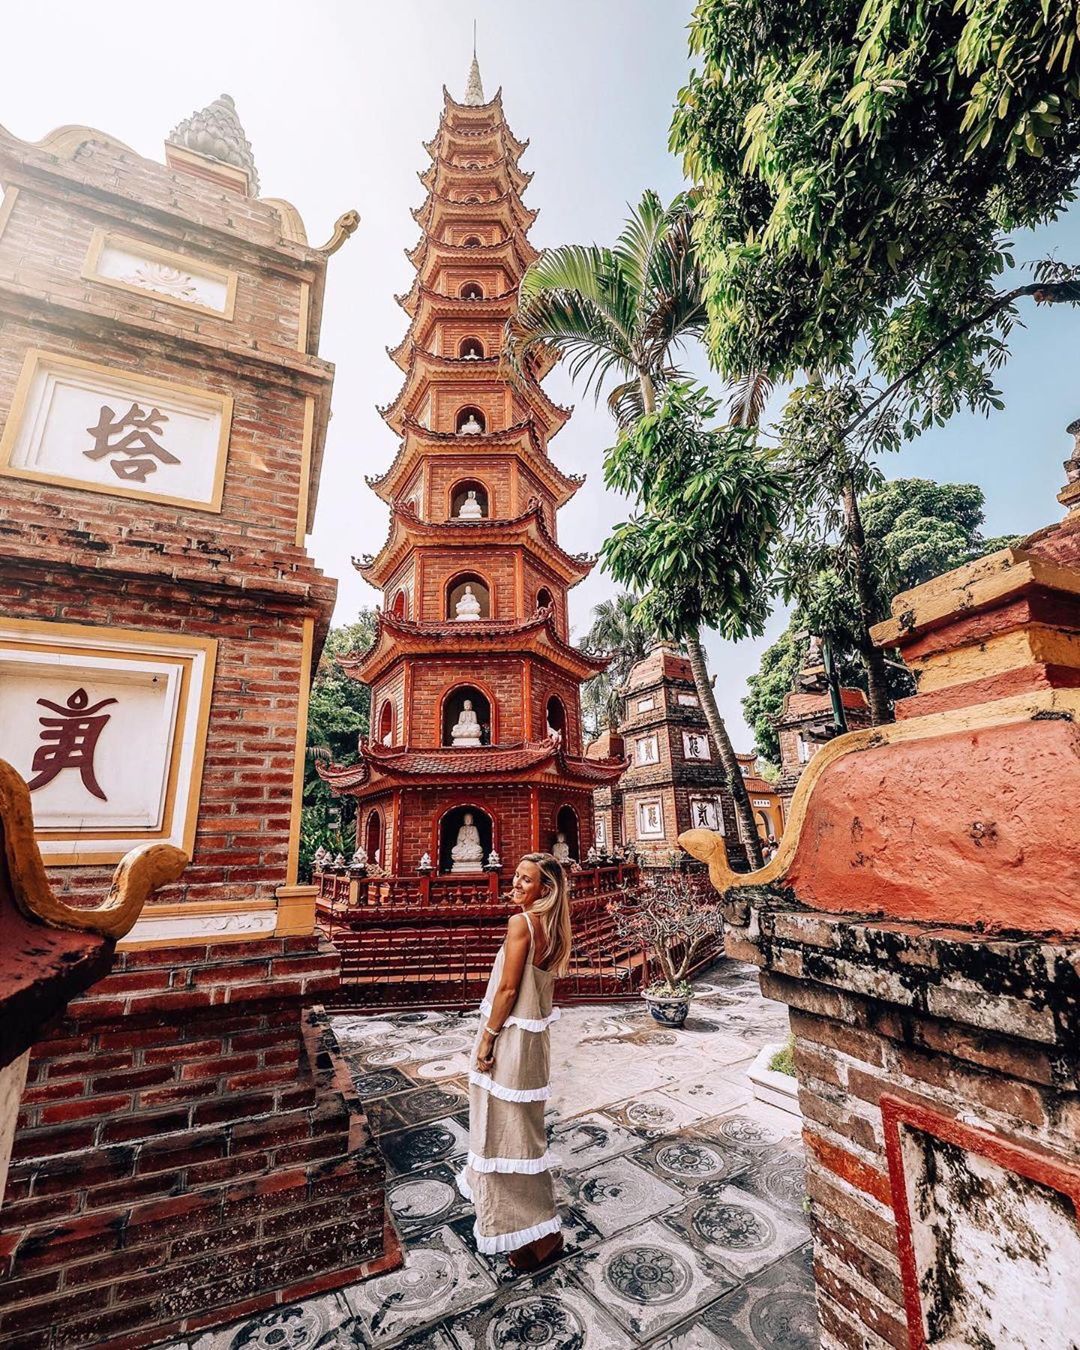 Top những ngôi chùa linh thiêng ở Hà Nội nên đi lễ cầu may trong dịp đầu năm - Ảnh 2.